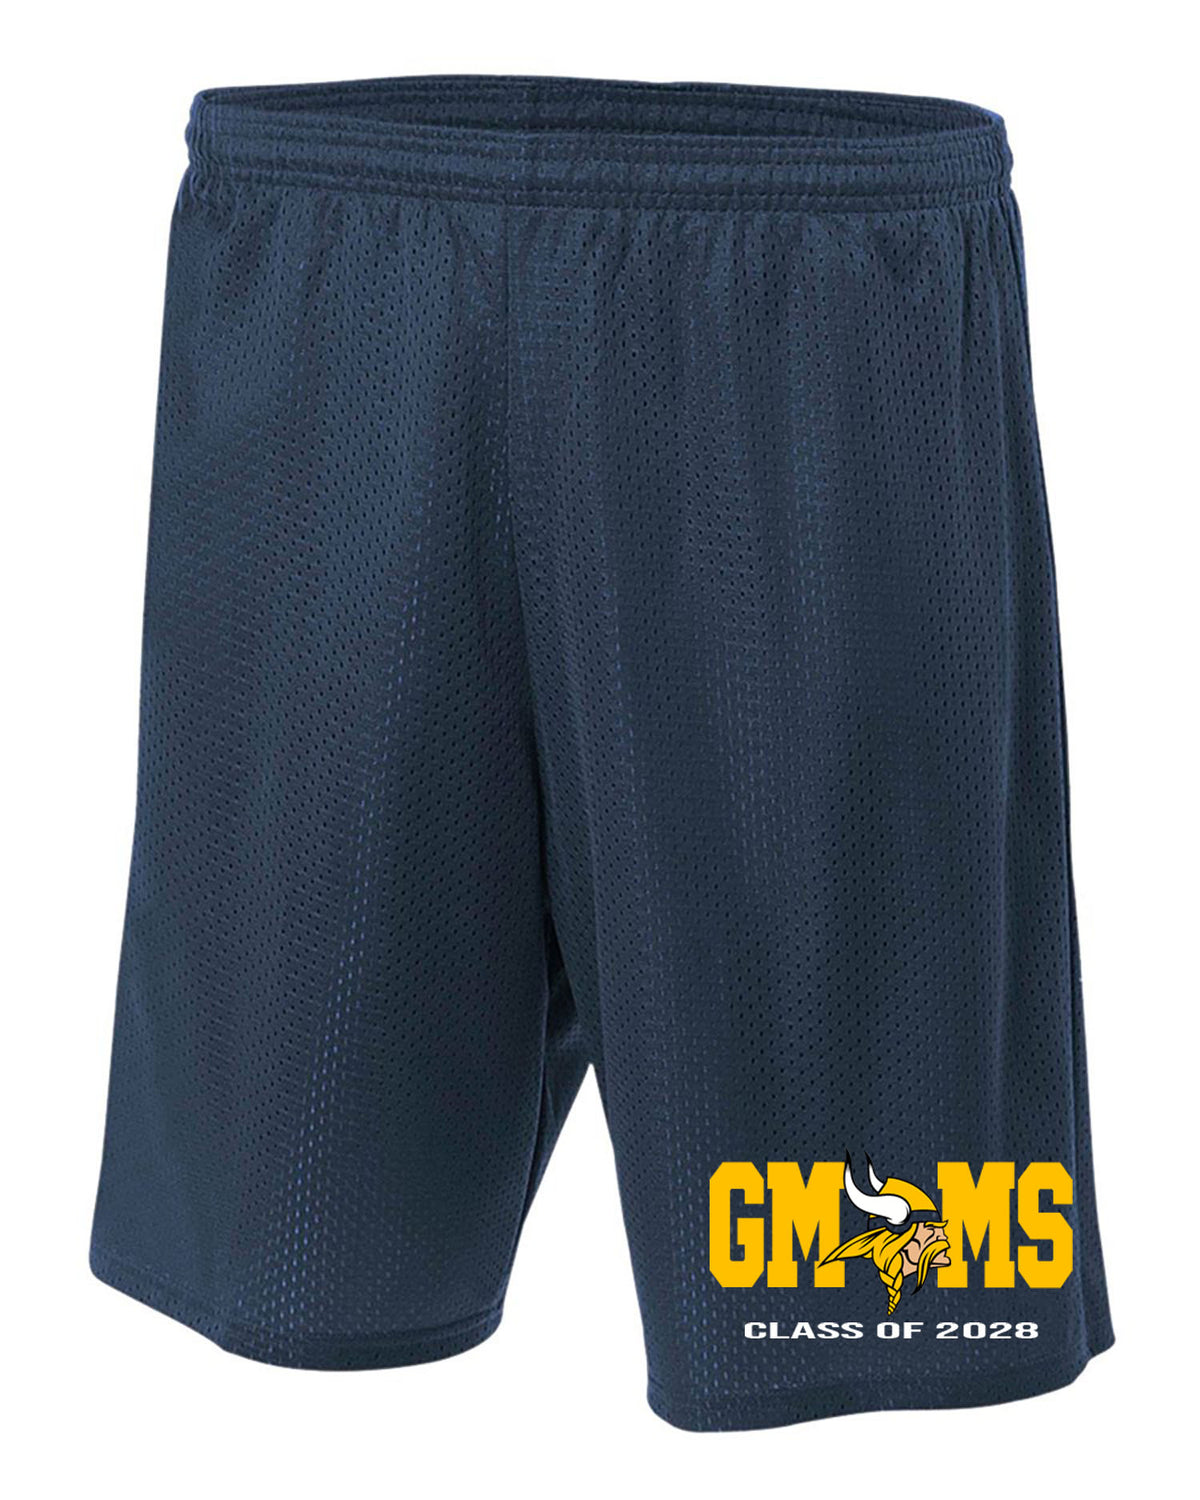 Glen Meadow Class of 2028 Mesh Shorts